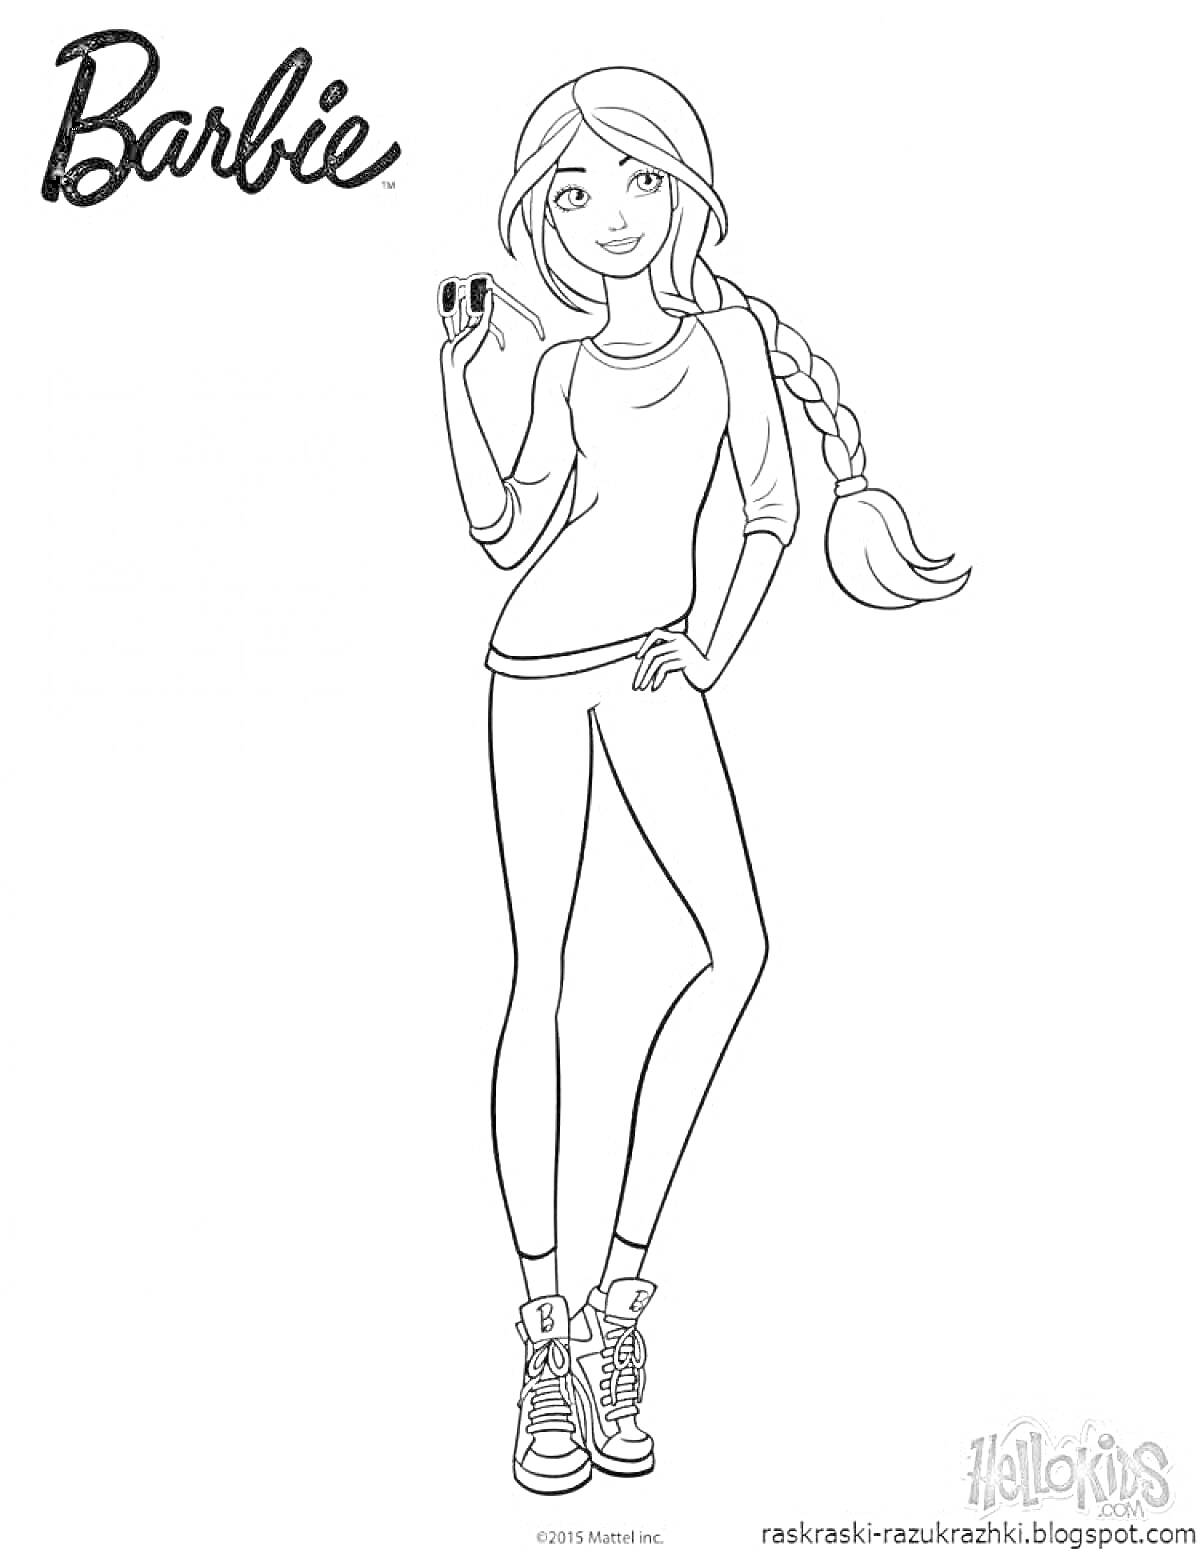 Раскраска Полный рост девушки с длинной косой, в кроссовках и с телефоном в руке